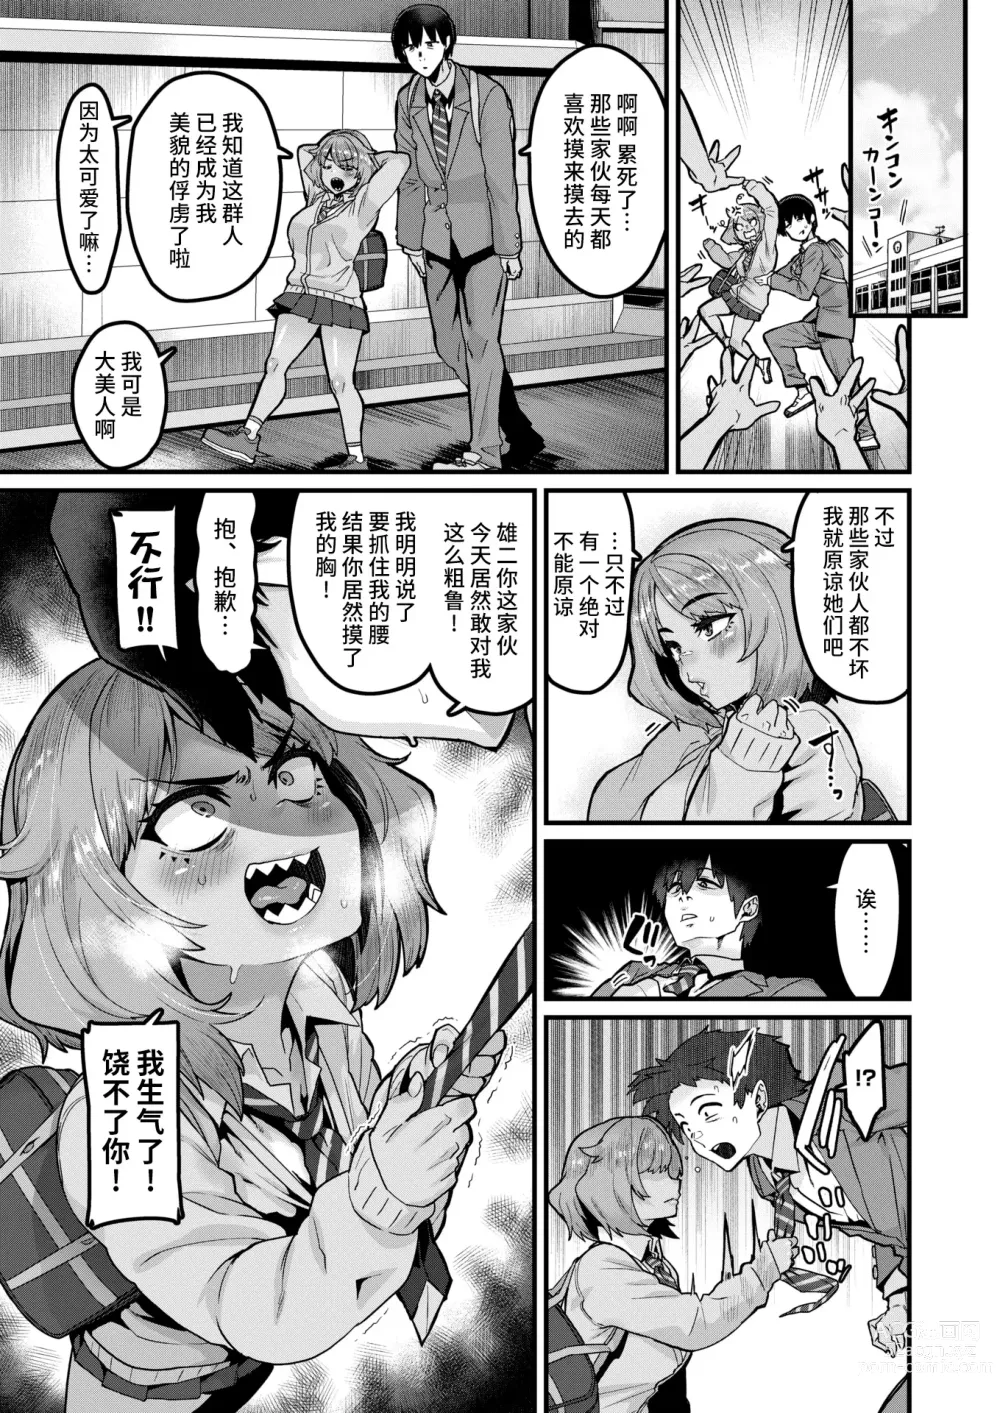 Page 6 of manga Tarinai Mono wa Oginatte!